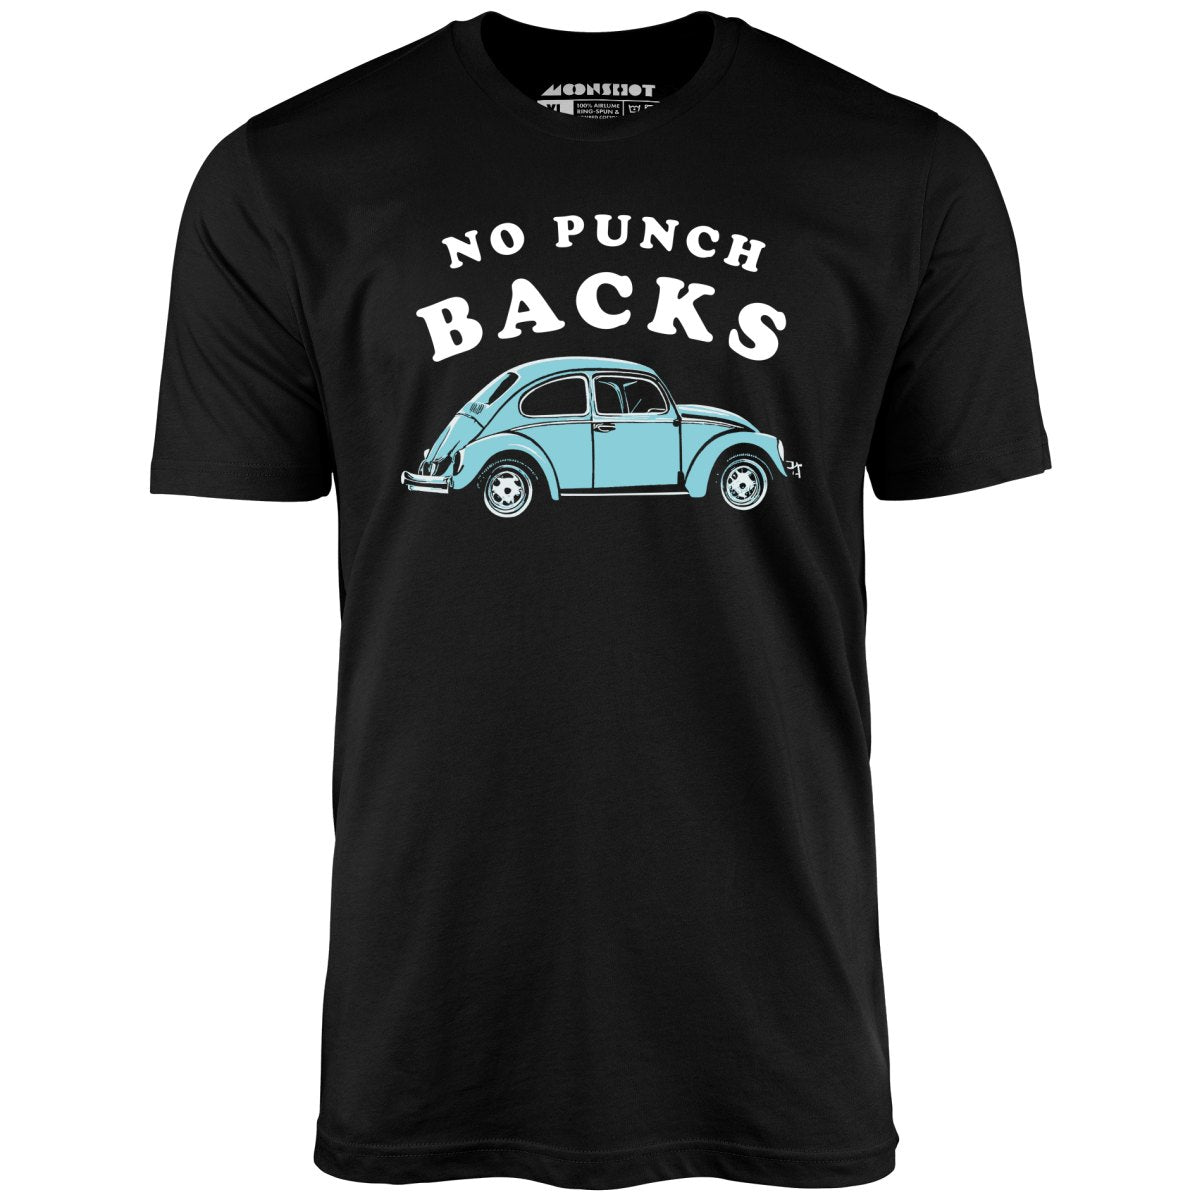 No Punch Backs - Unisex T-Shirt